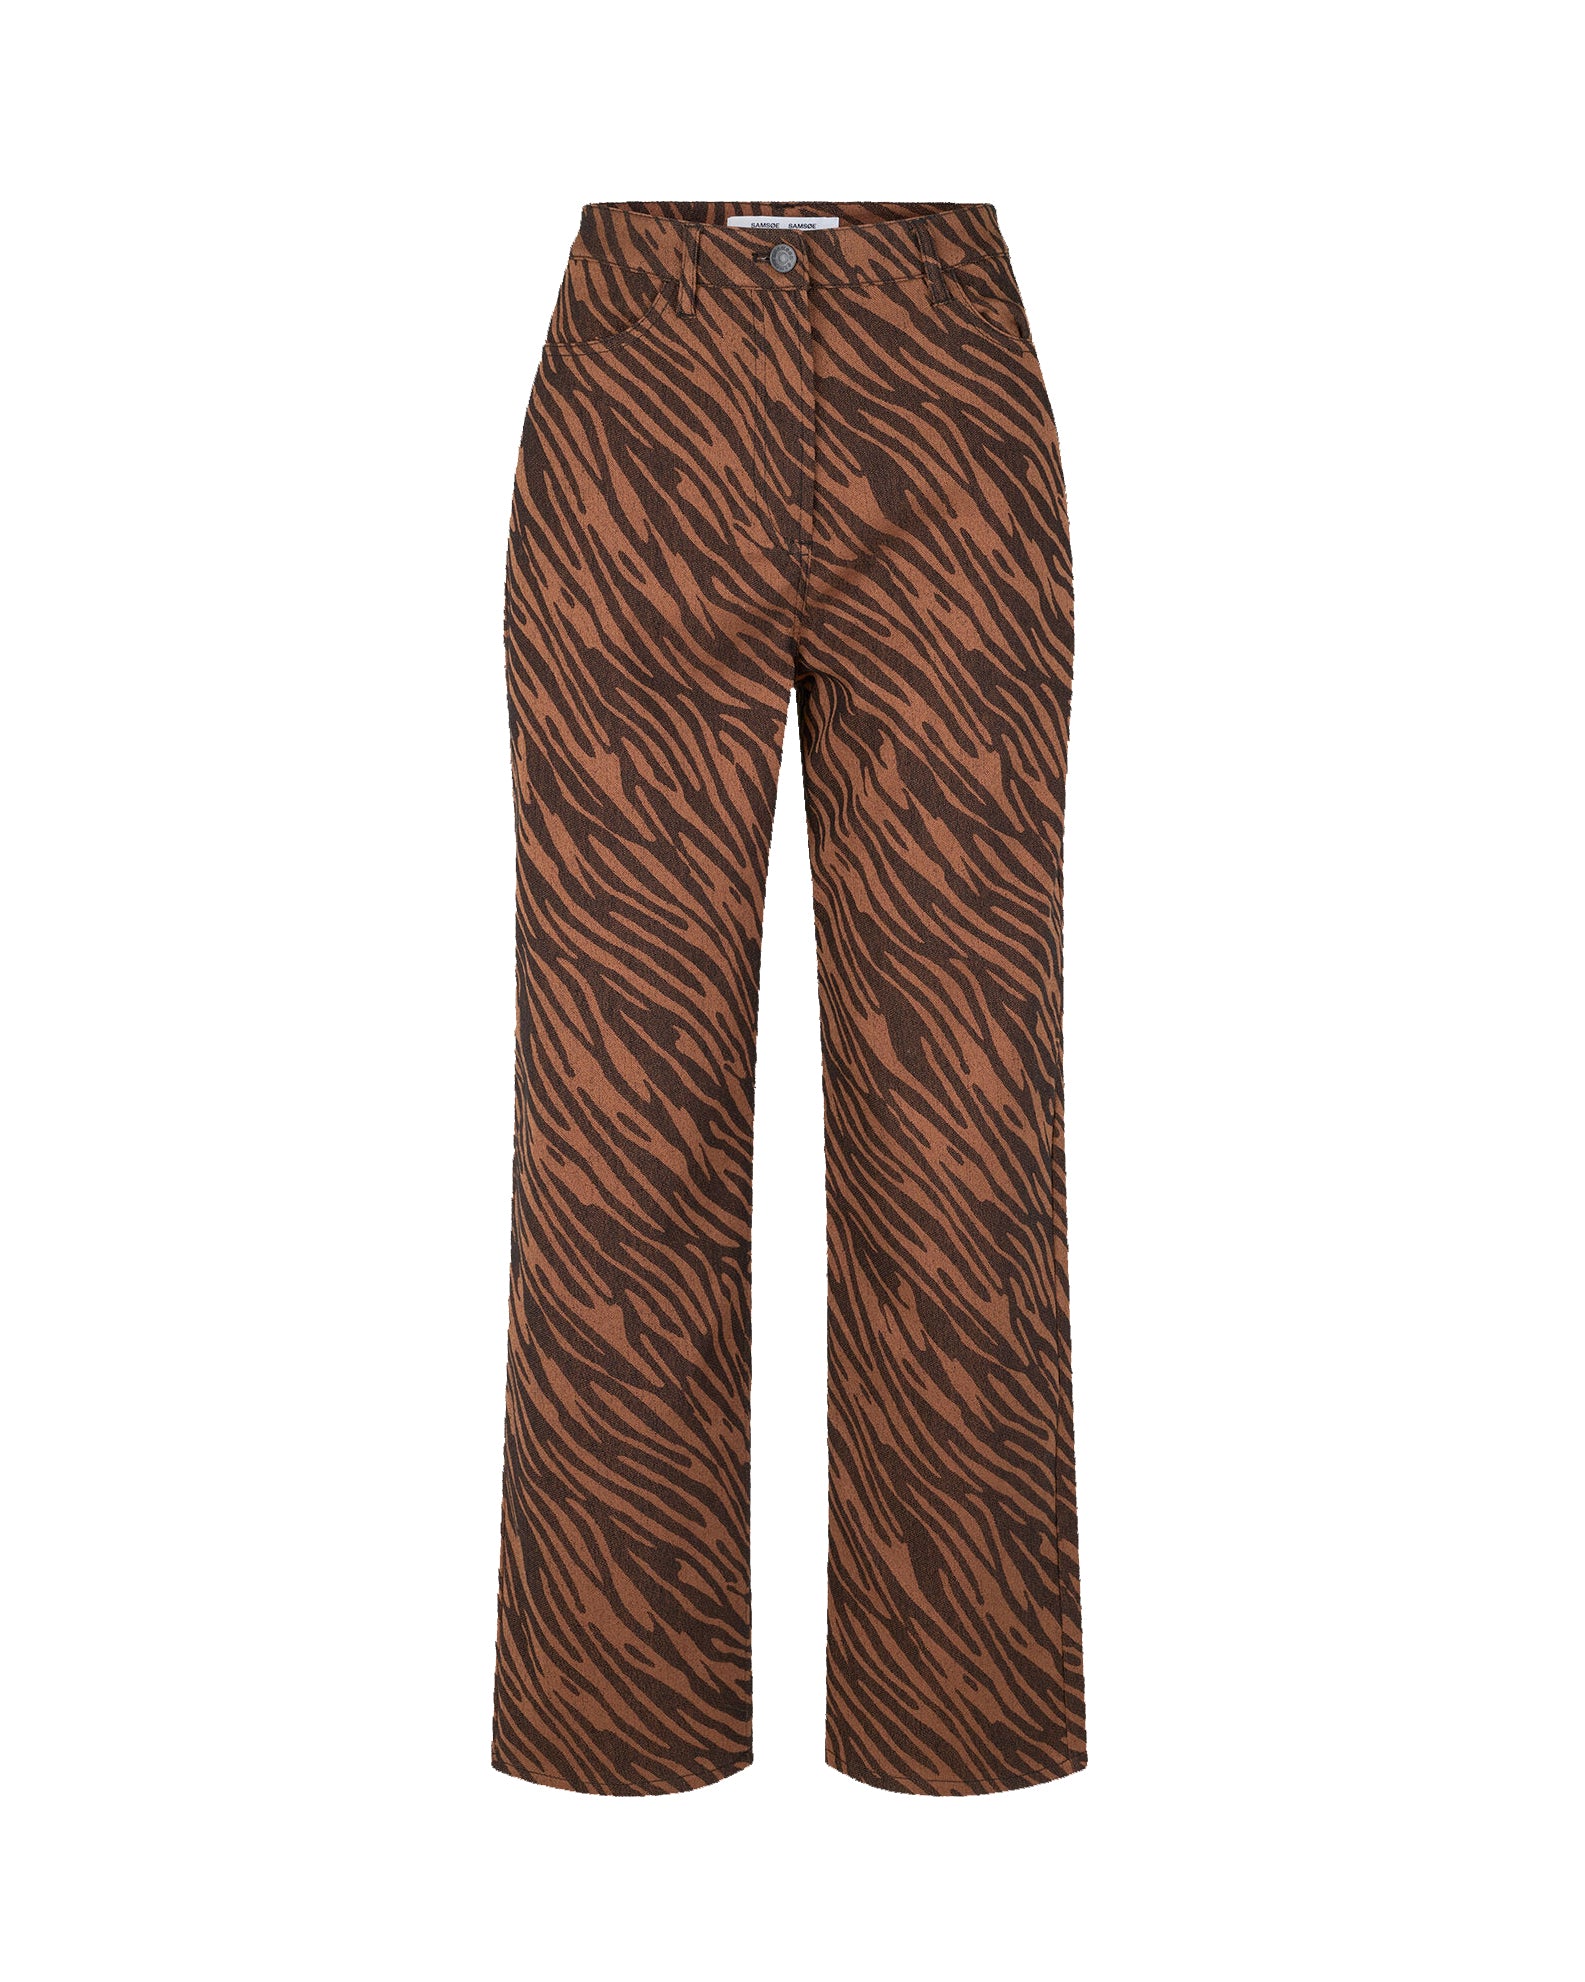 Pantalon Noa 14601 - Tigre